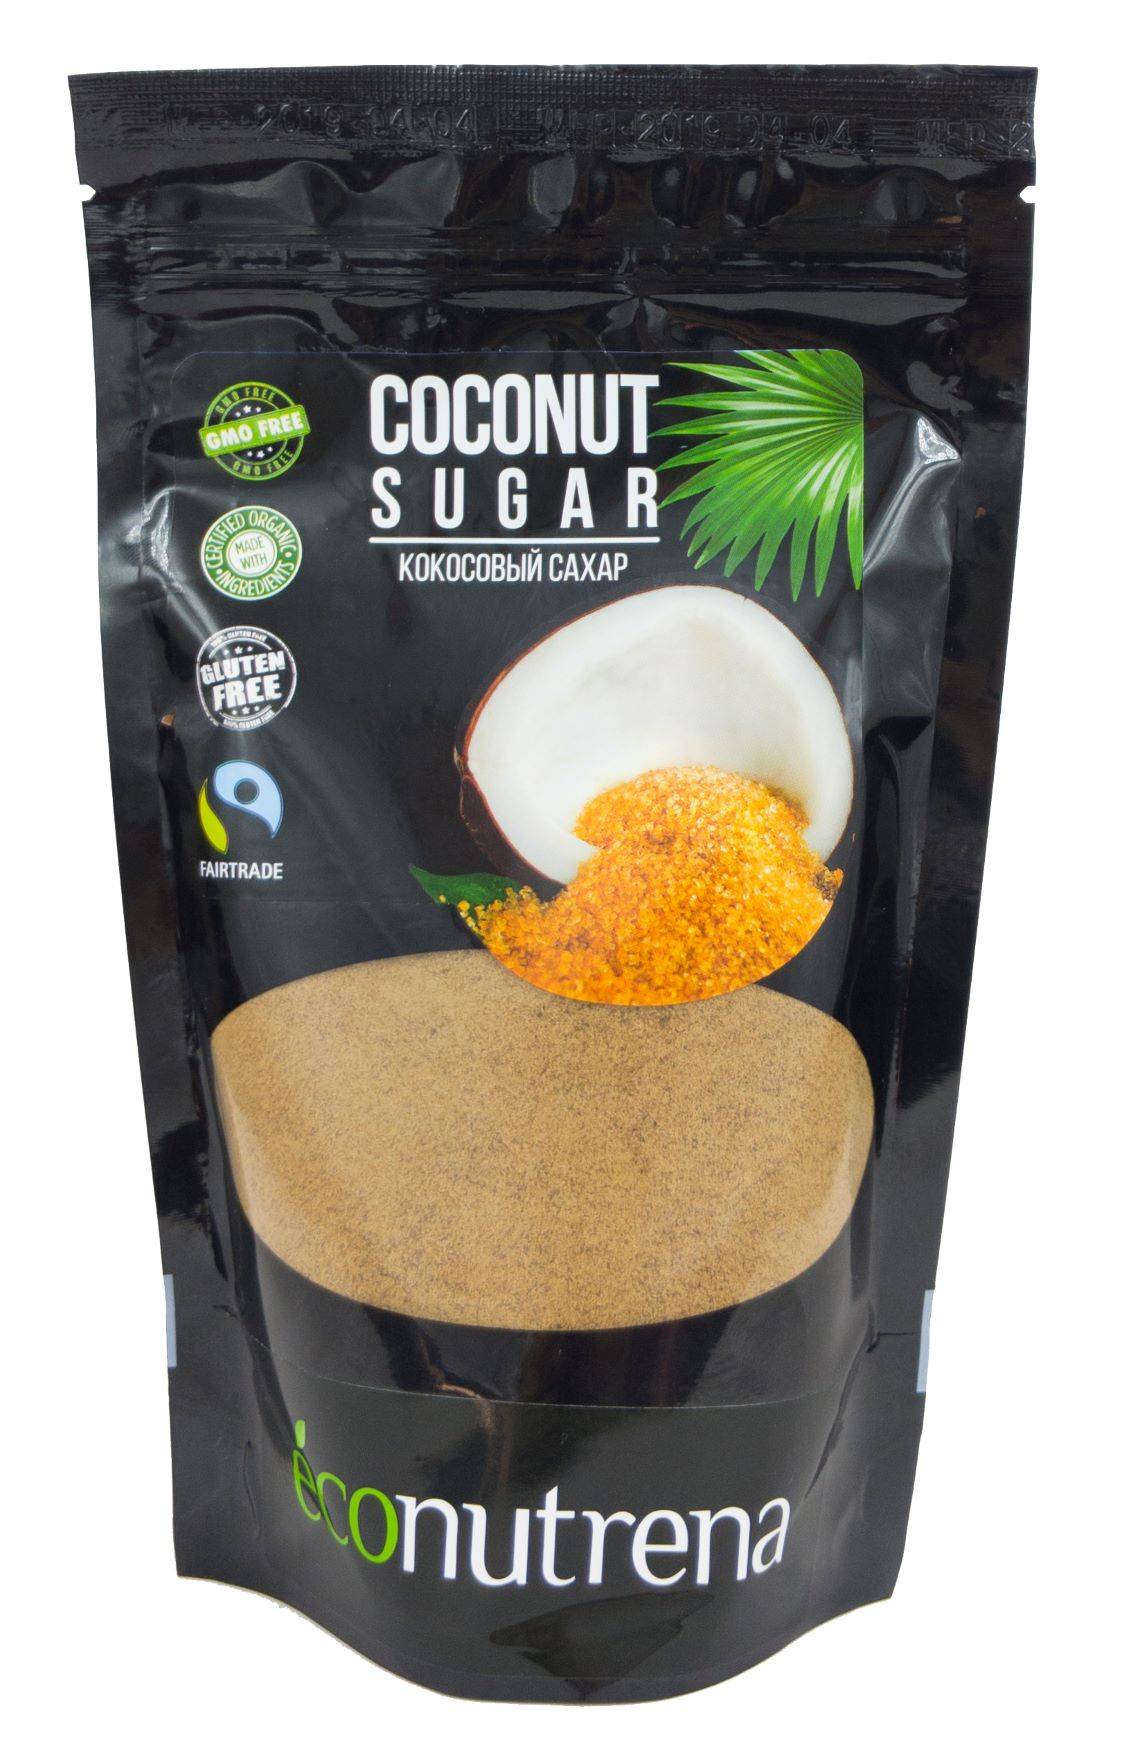 7 главных преимуществ кокосового сахара и его гликемический индекс